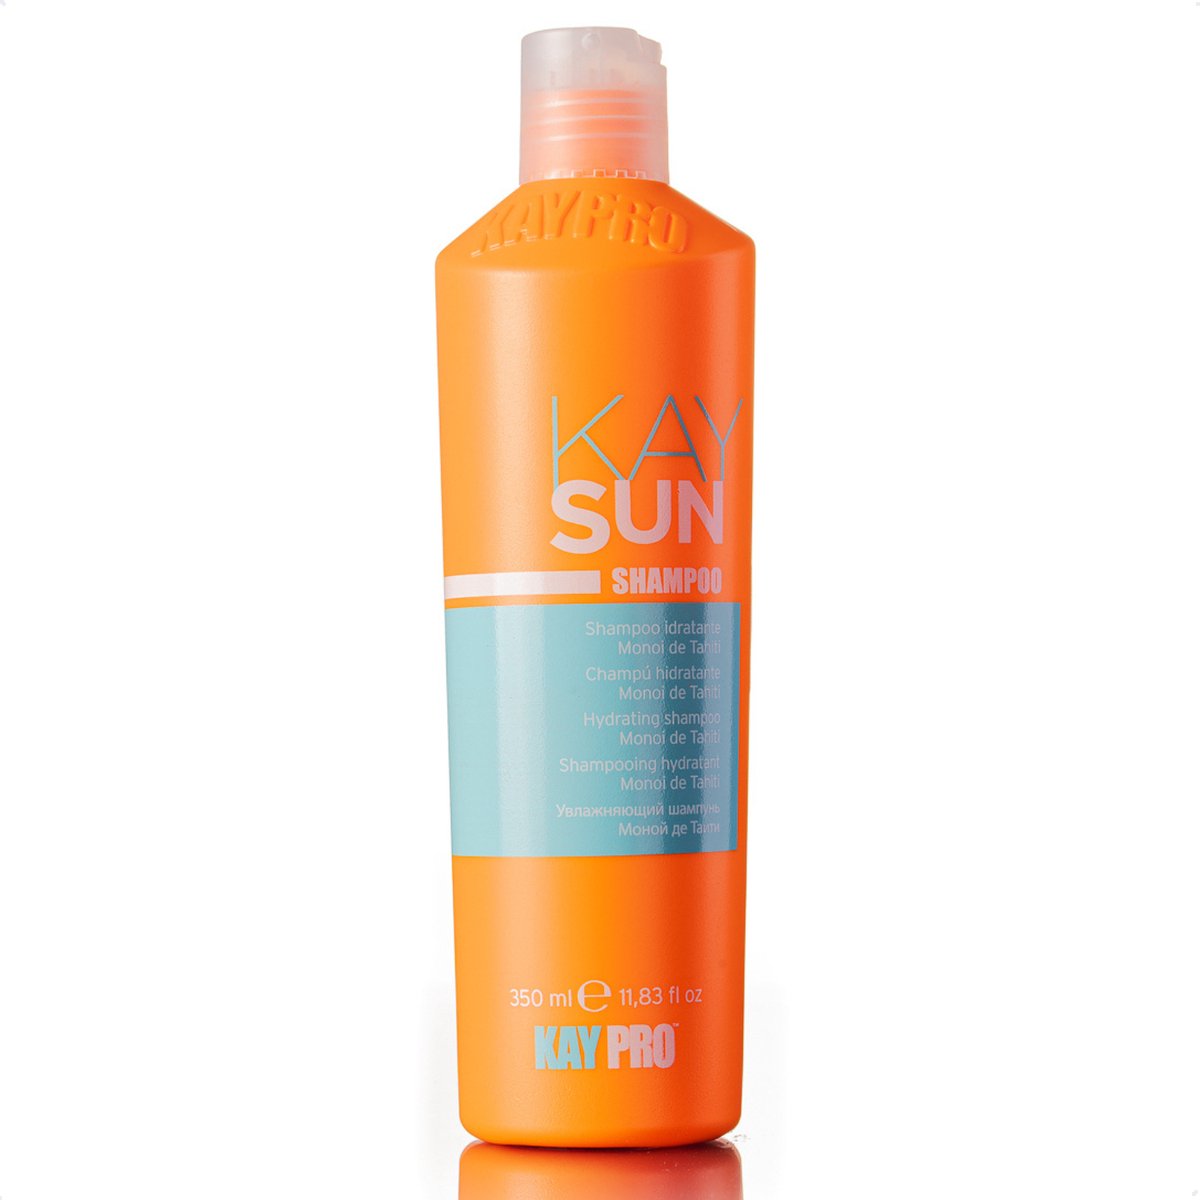 KayPro KaySun Shampoo 350 ml – Professionele Haarverzorging – Shampoo voor in de Zon – Sun Protection Hair – Zonnebescherming haar